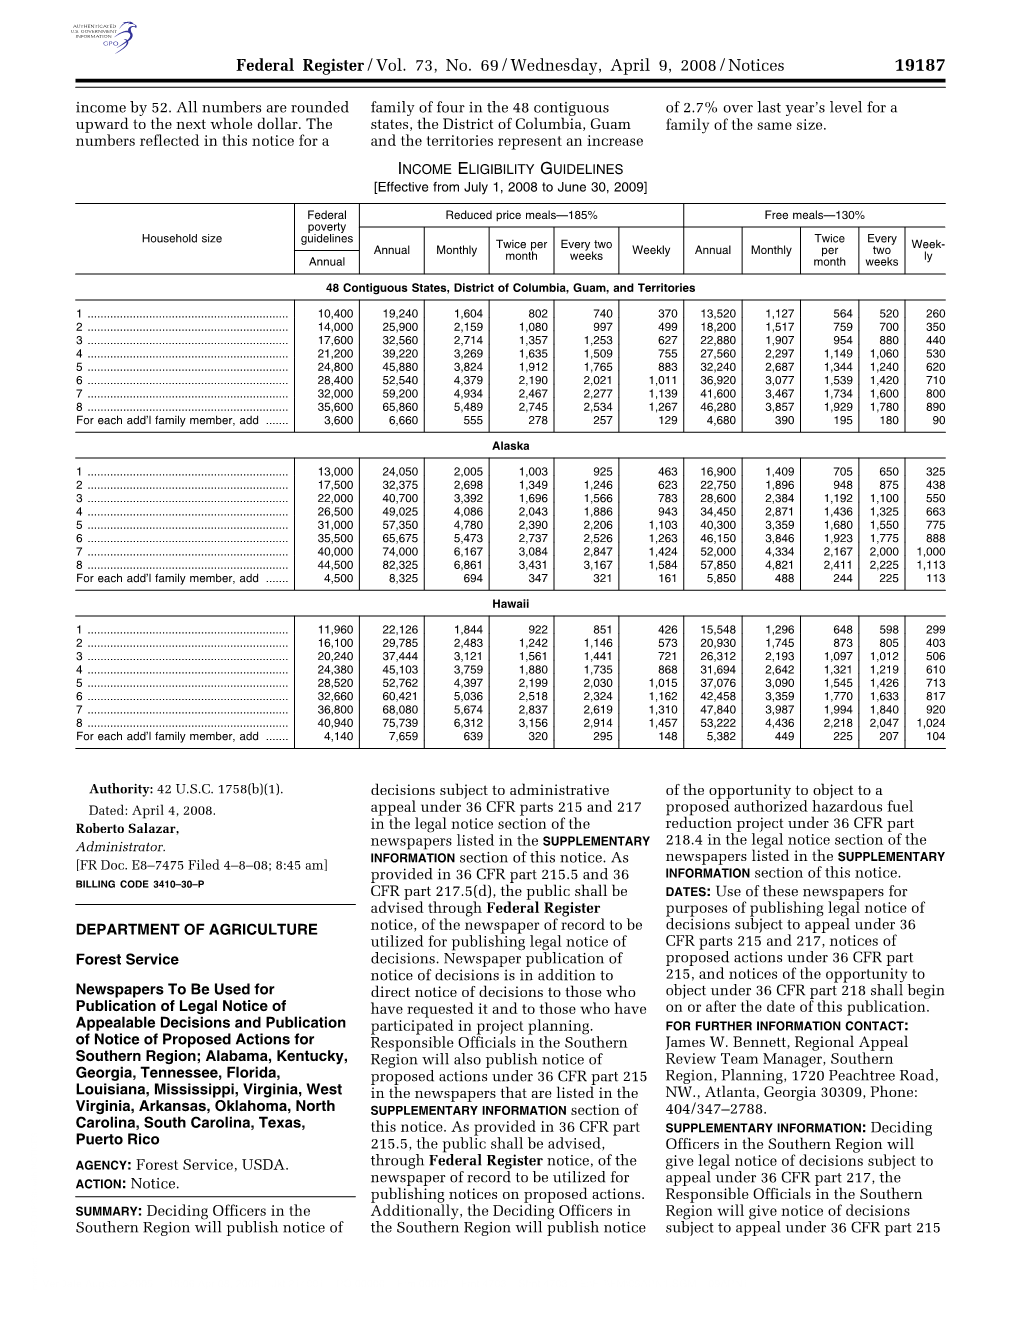 Federal Register/Vol. 73, No. 69/Wednesday, April 9